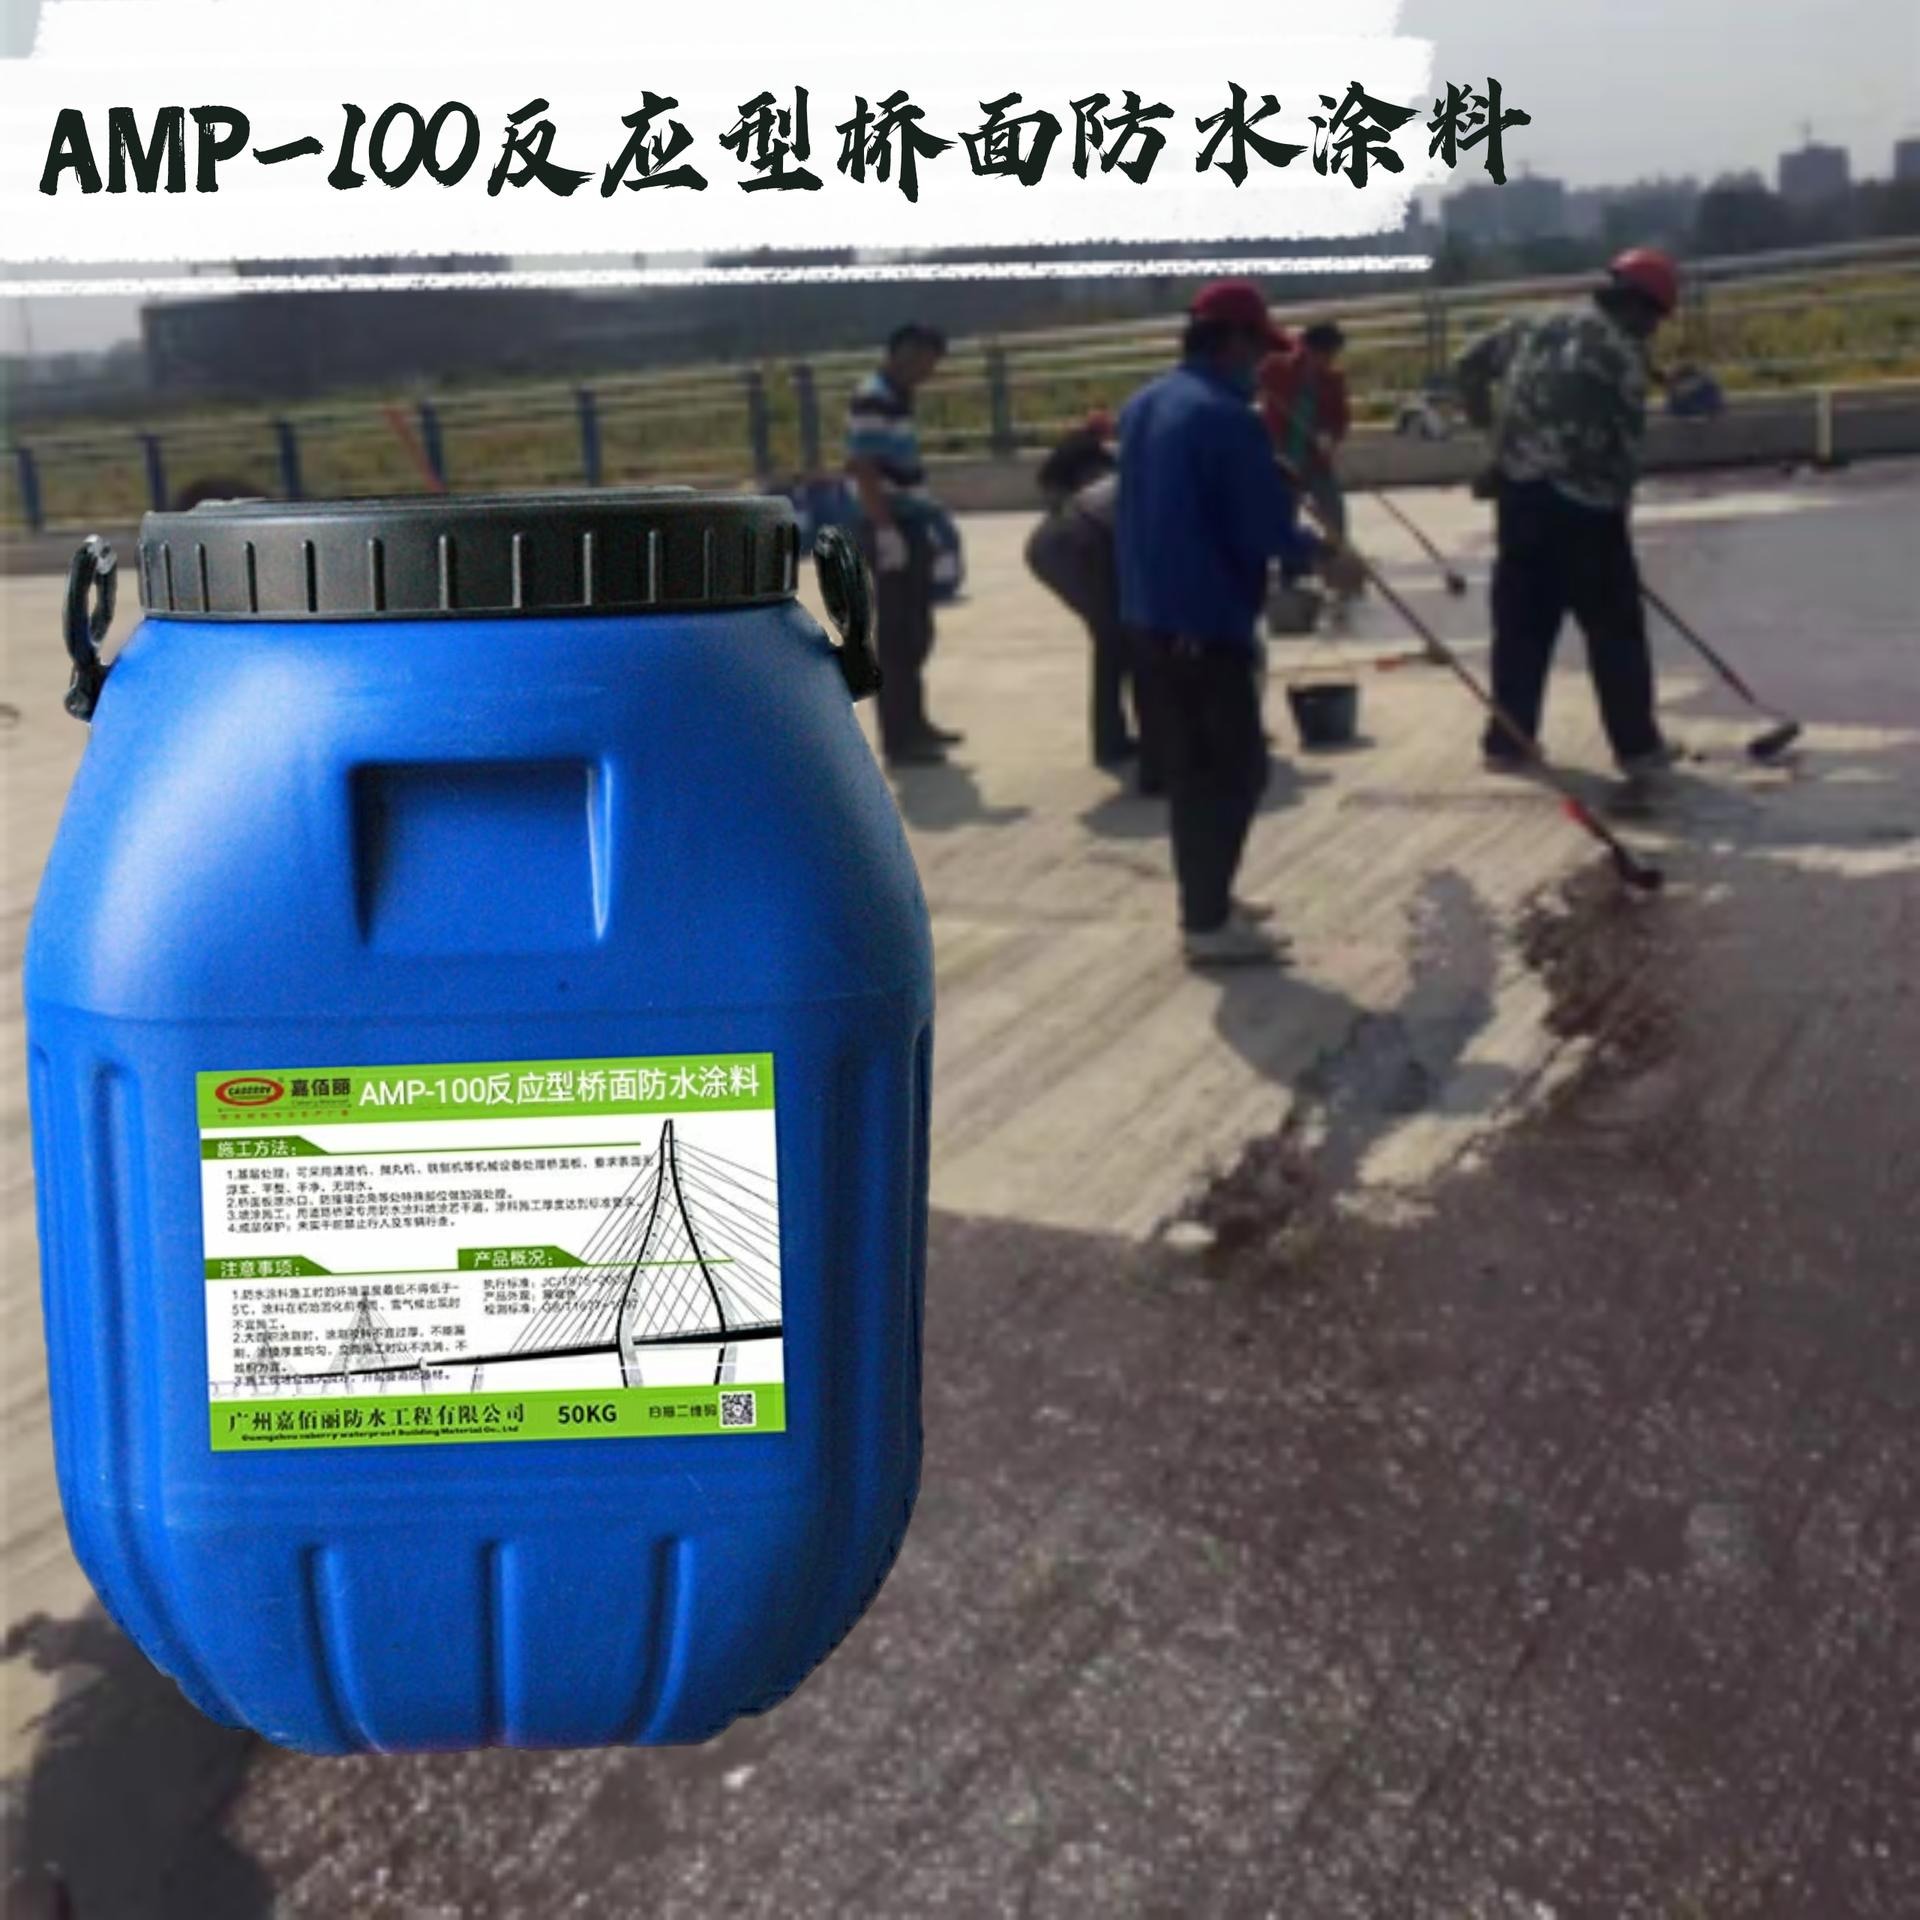 福建厂家品牌专营 嘉佰丽AMP-100反应型桥面防水涂料 量大价优图片